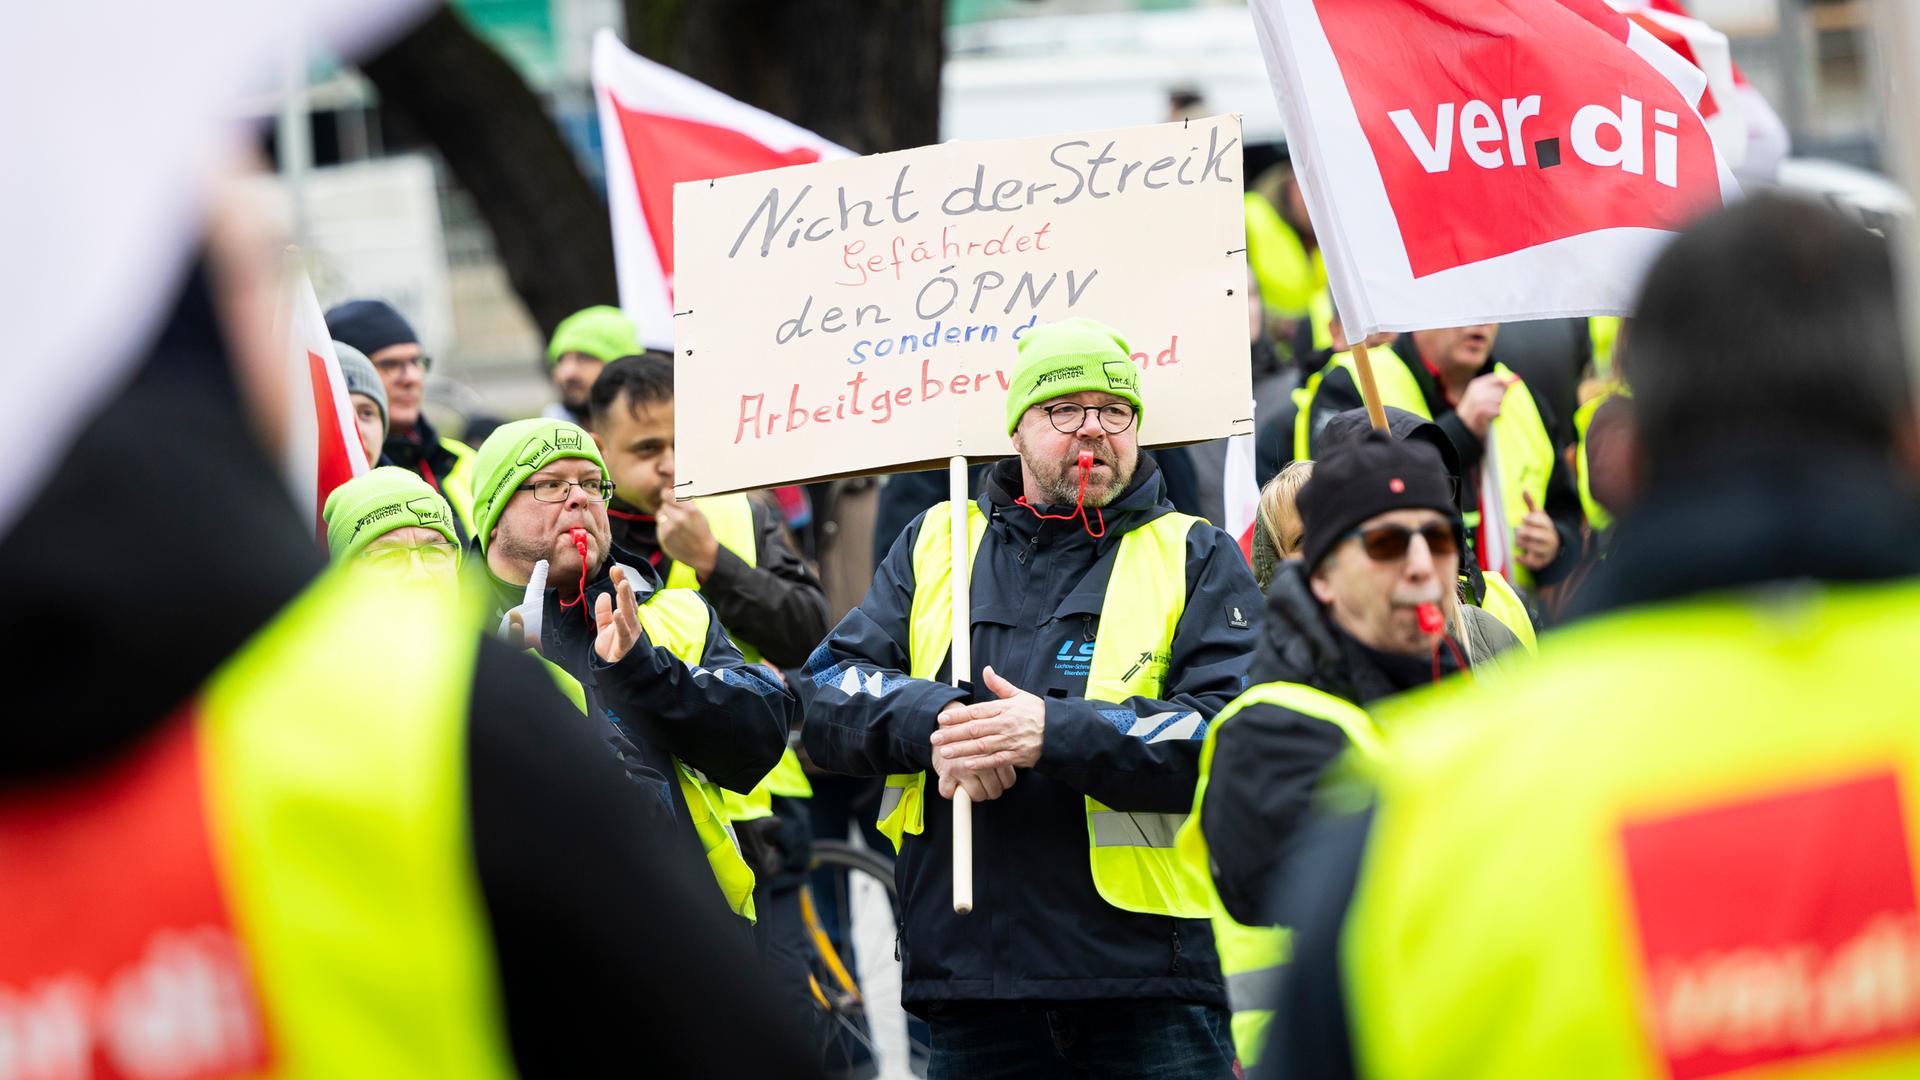 Ein Teilnehmer einer Verdi-Demonstration steht mit einem Schild mit der Aufschrift "Nicht der Streik gefährdet den ÖPNV, sondern der Arbeitgeberverband" während einer Kundgebung in der Innenstadt von Hannover. 